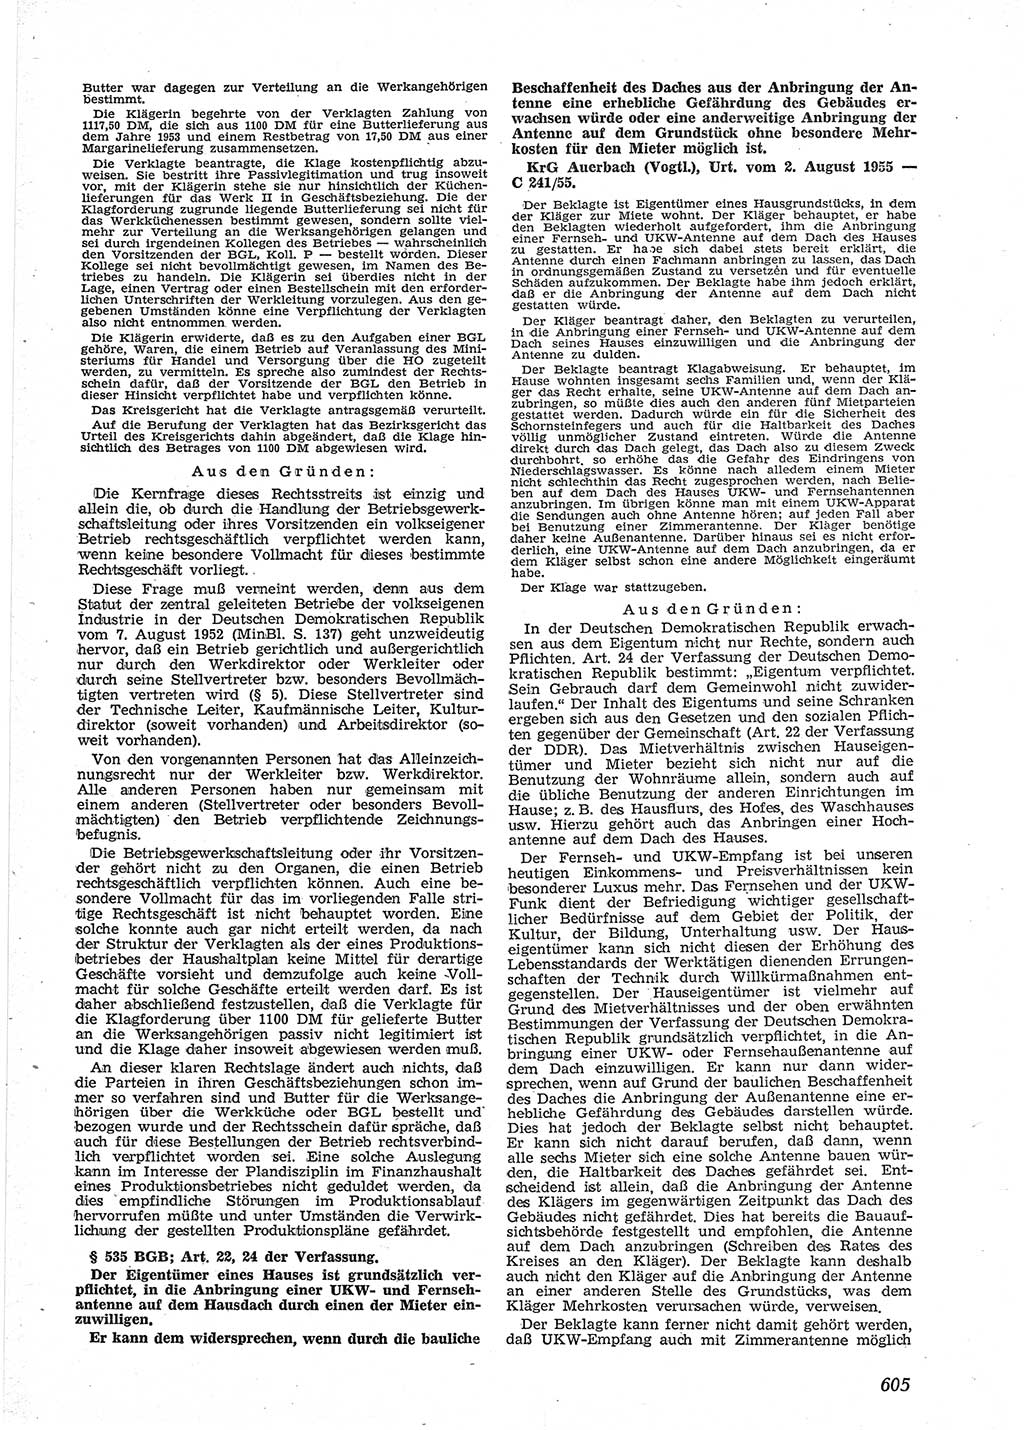 Neue Justiz (NJ), Zeitschrift für Recht und Rechtswissenschaft [Deutsche Demokratische Republik (DDR)], 9. Jahrgang 1955, Seite 605 (NJ DDR 1955, S. 605)